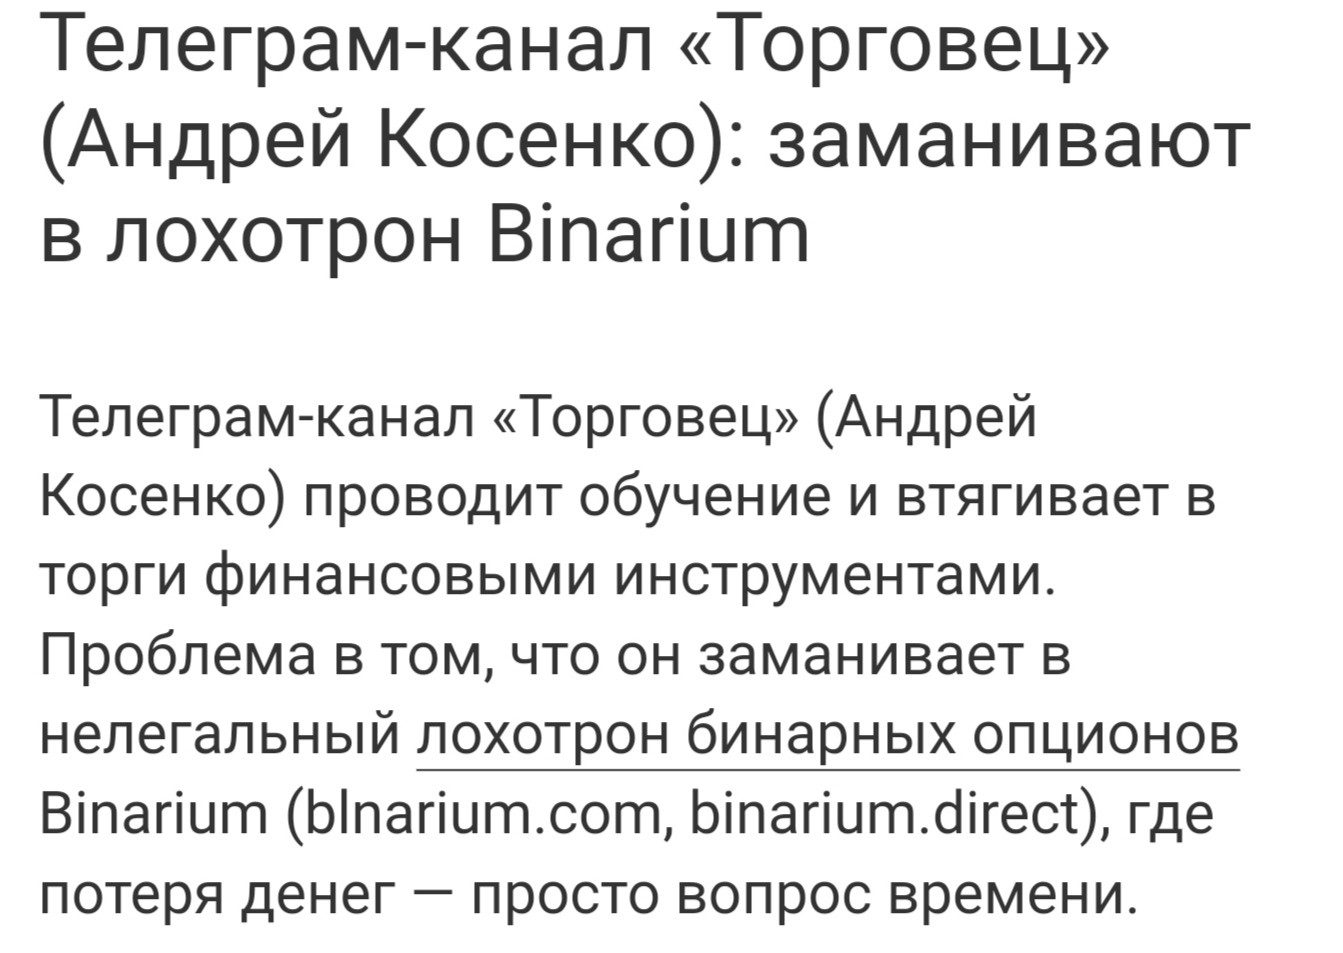 Андрей Косенко Торговец Телеграмм отзывы